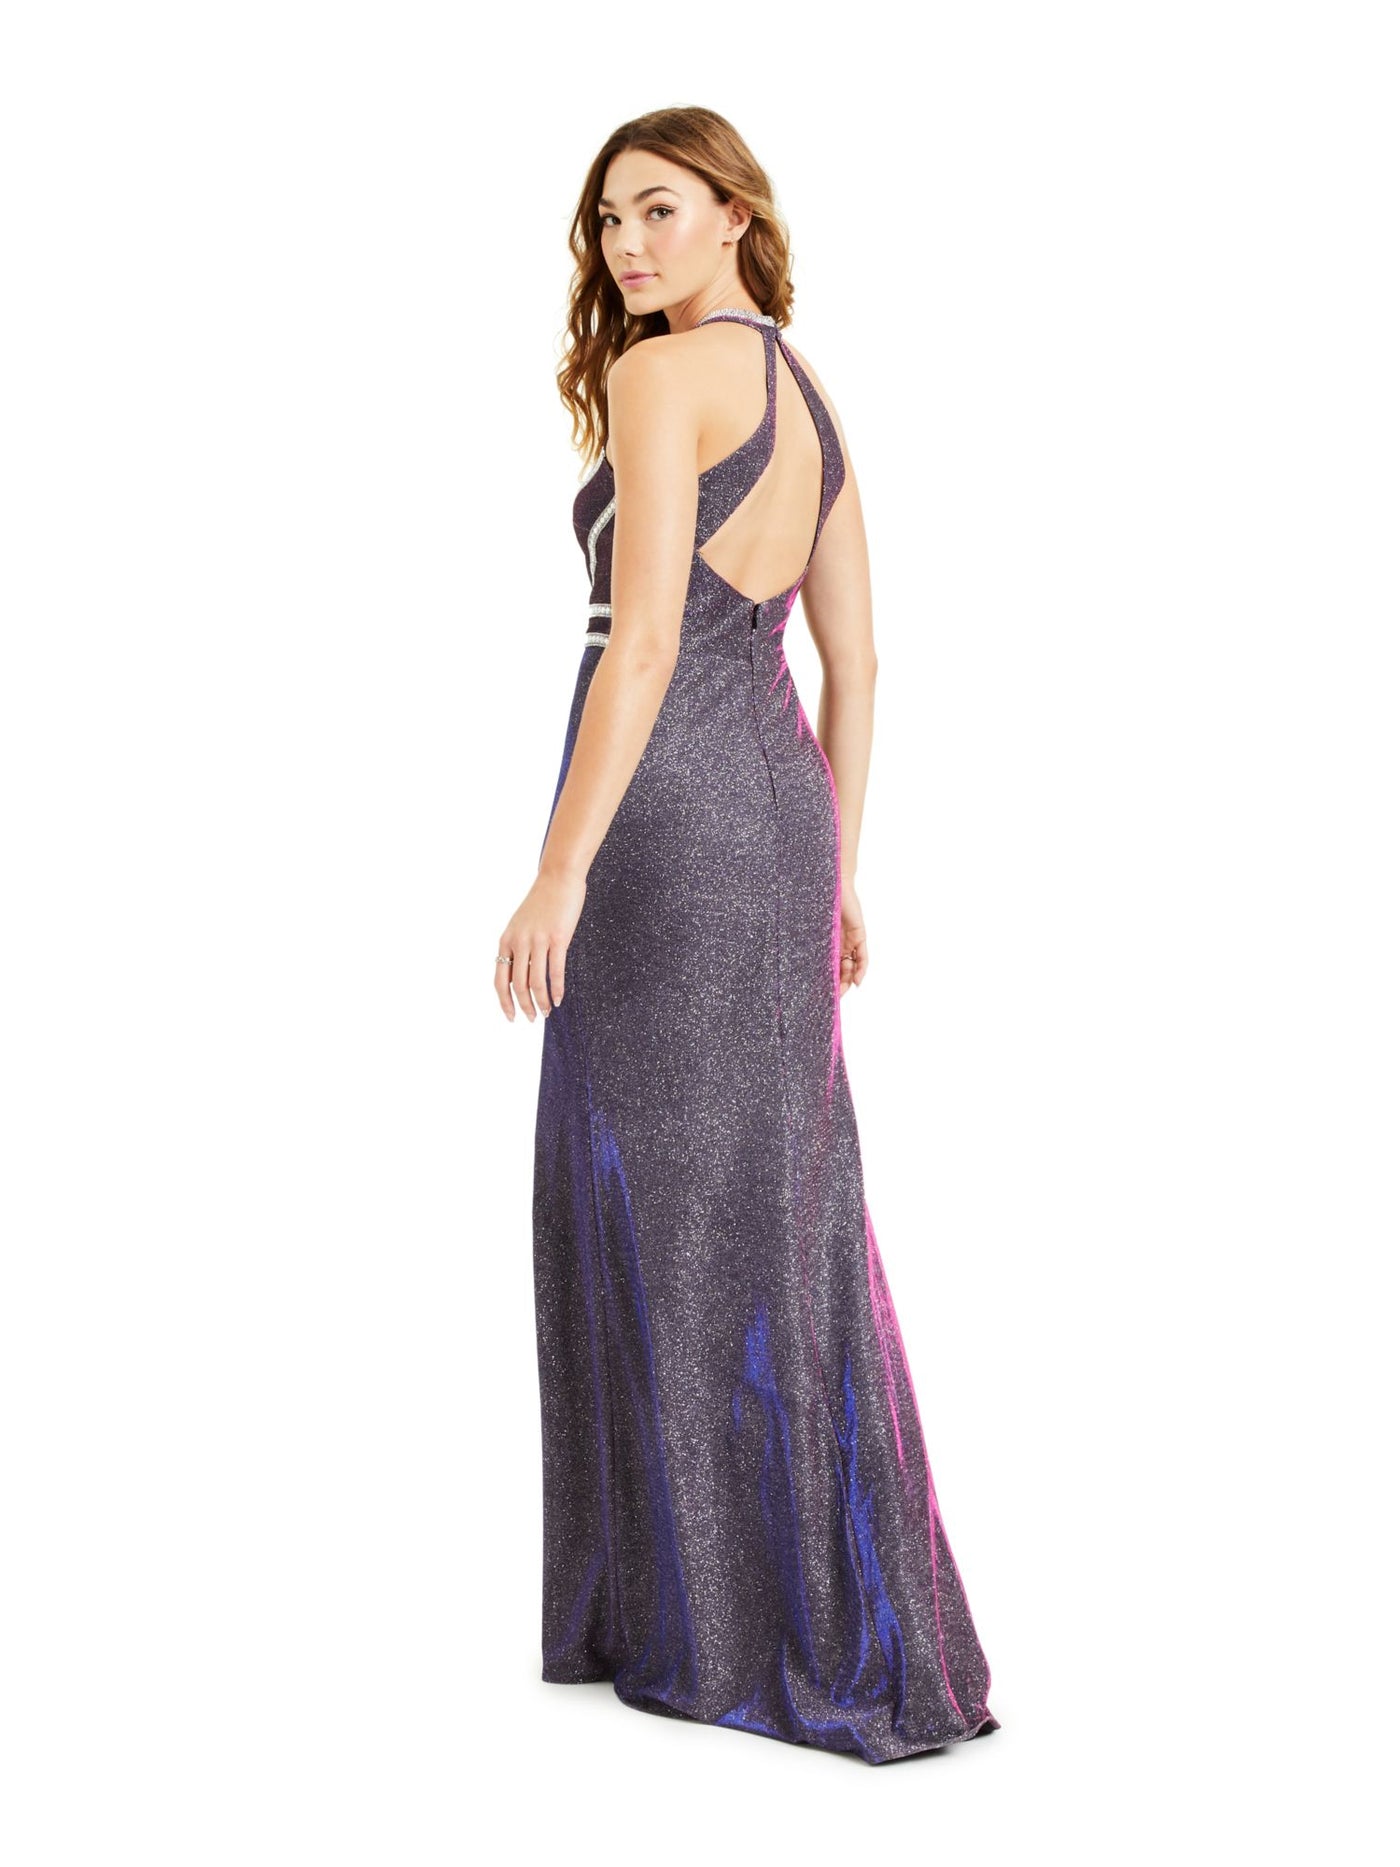 BLONDIE Womens Glitter Embellished Slitted Gown Sleeveless V Neck Full-Length Prom Dress